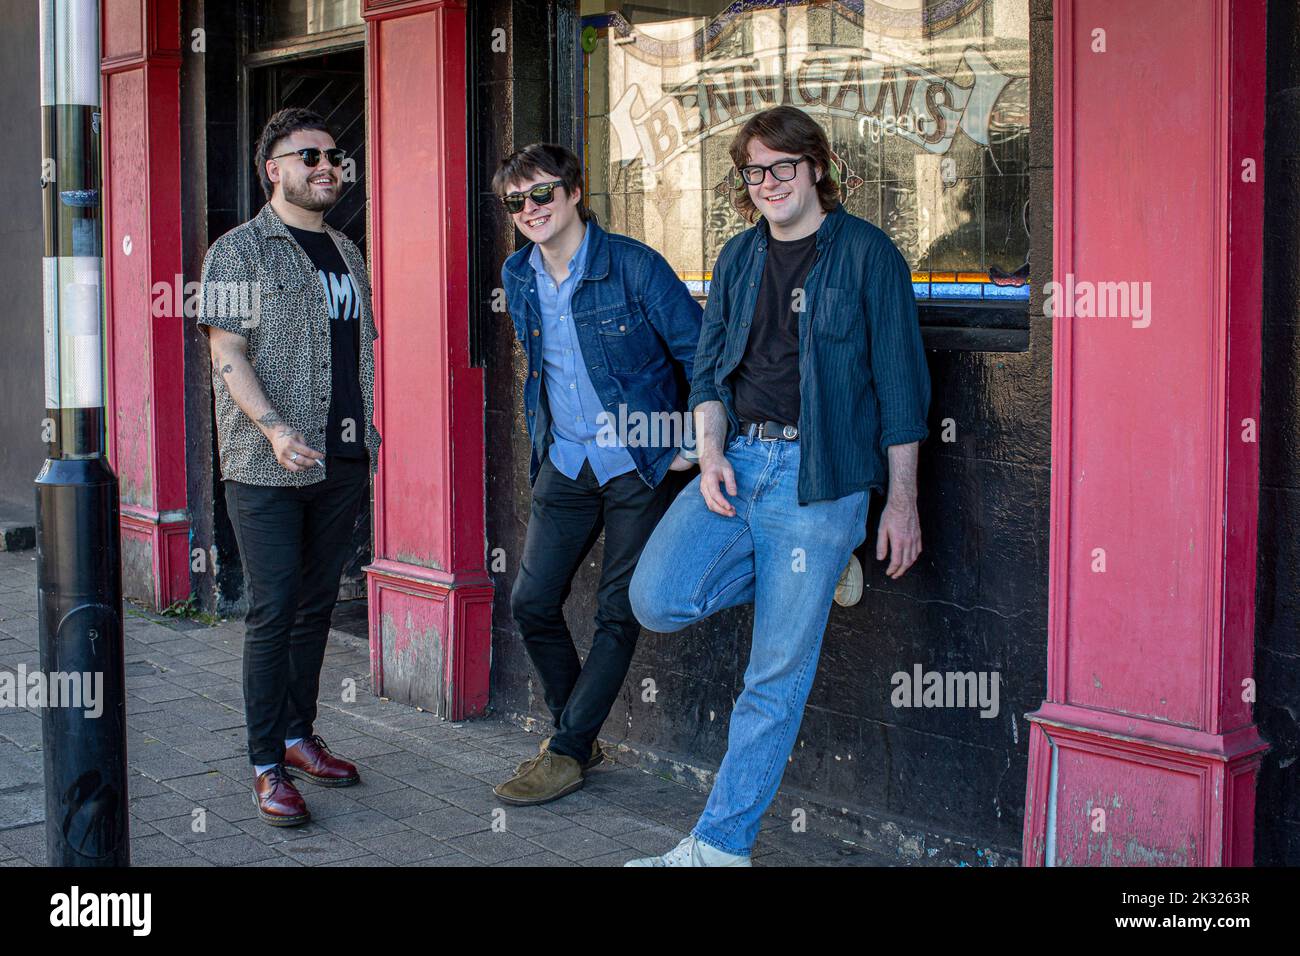 Derrys vielversprechendste neue Punk-Band, TOUTS , Londonderry, Derry, Nordirland. Stockfoto